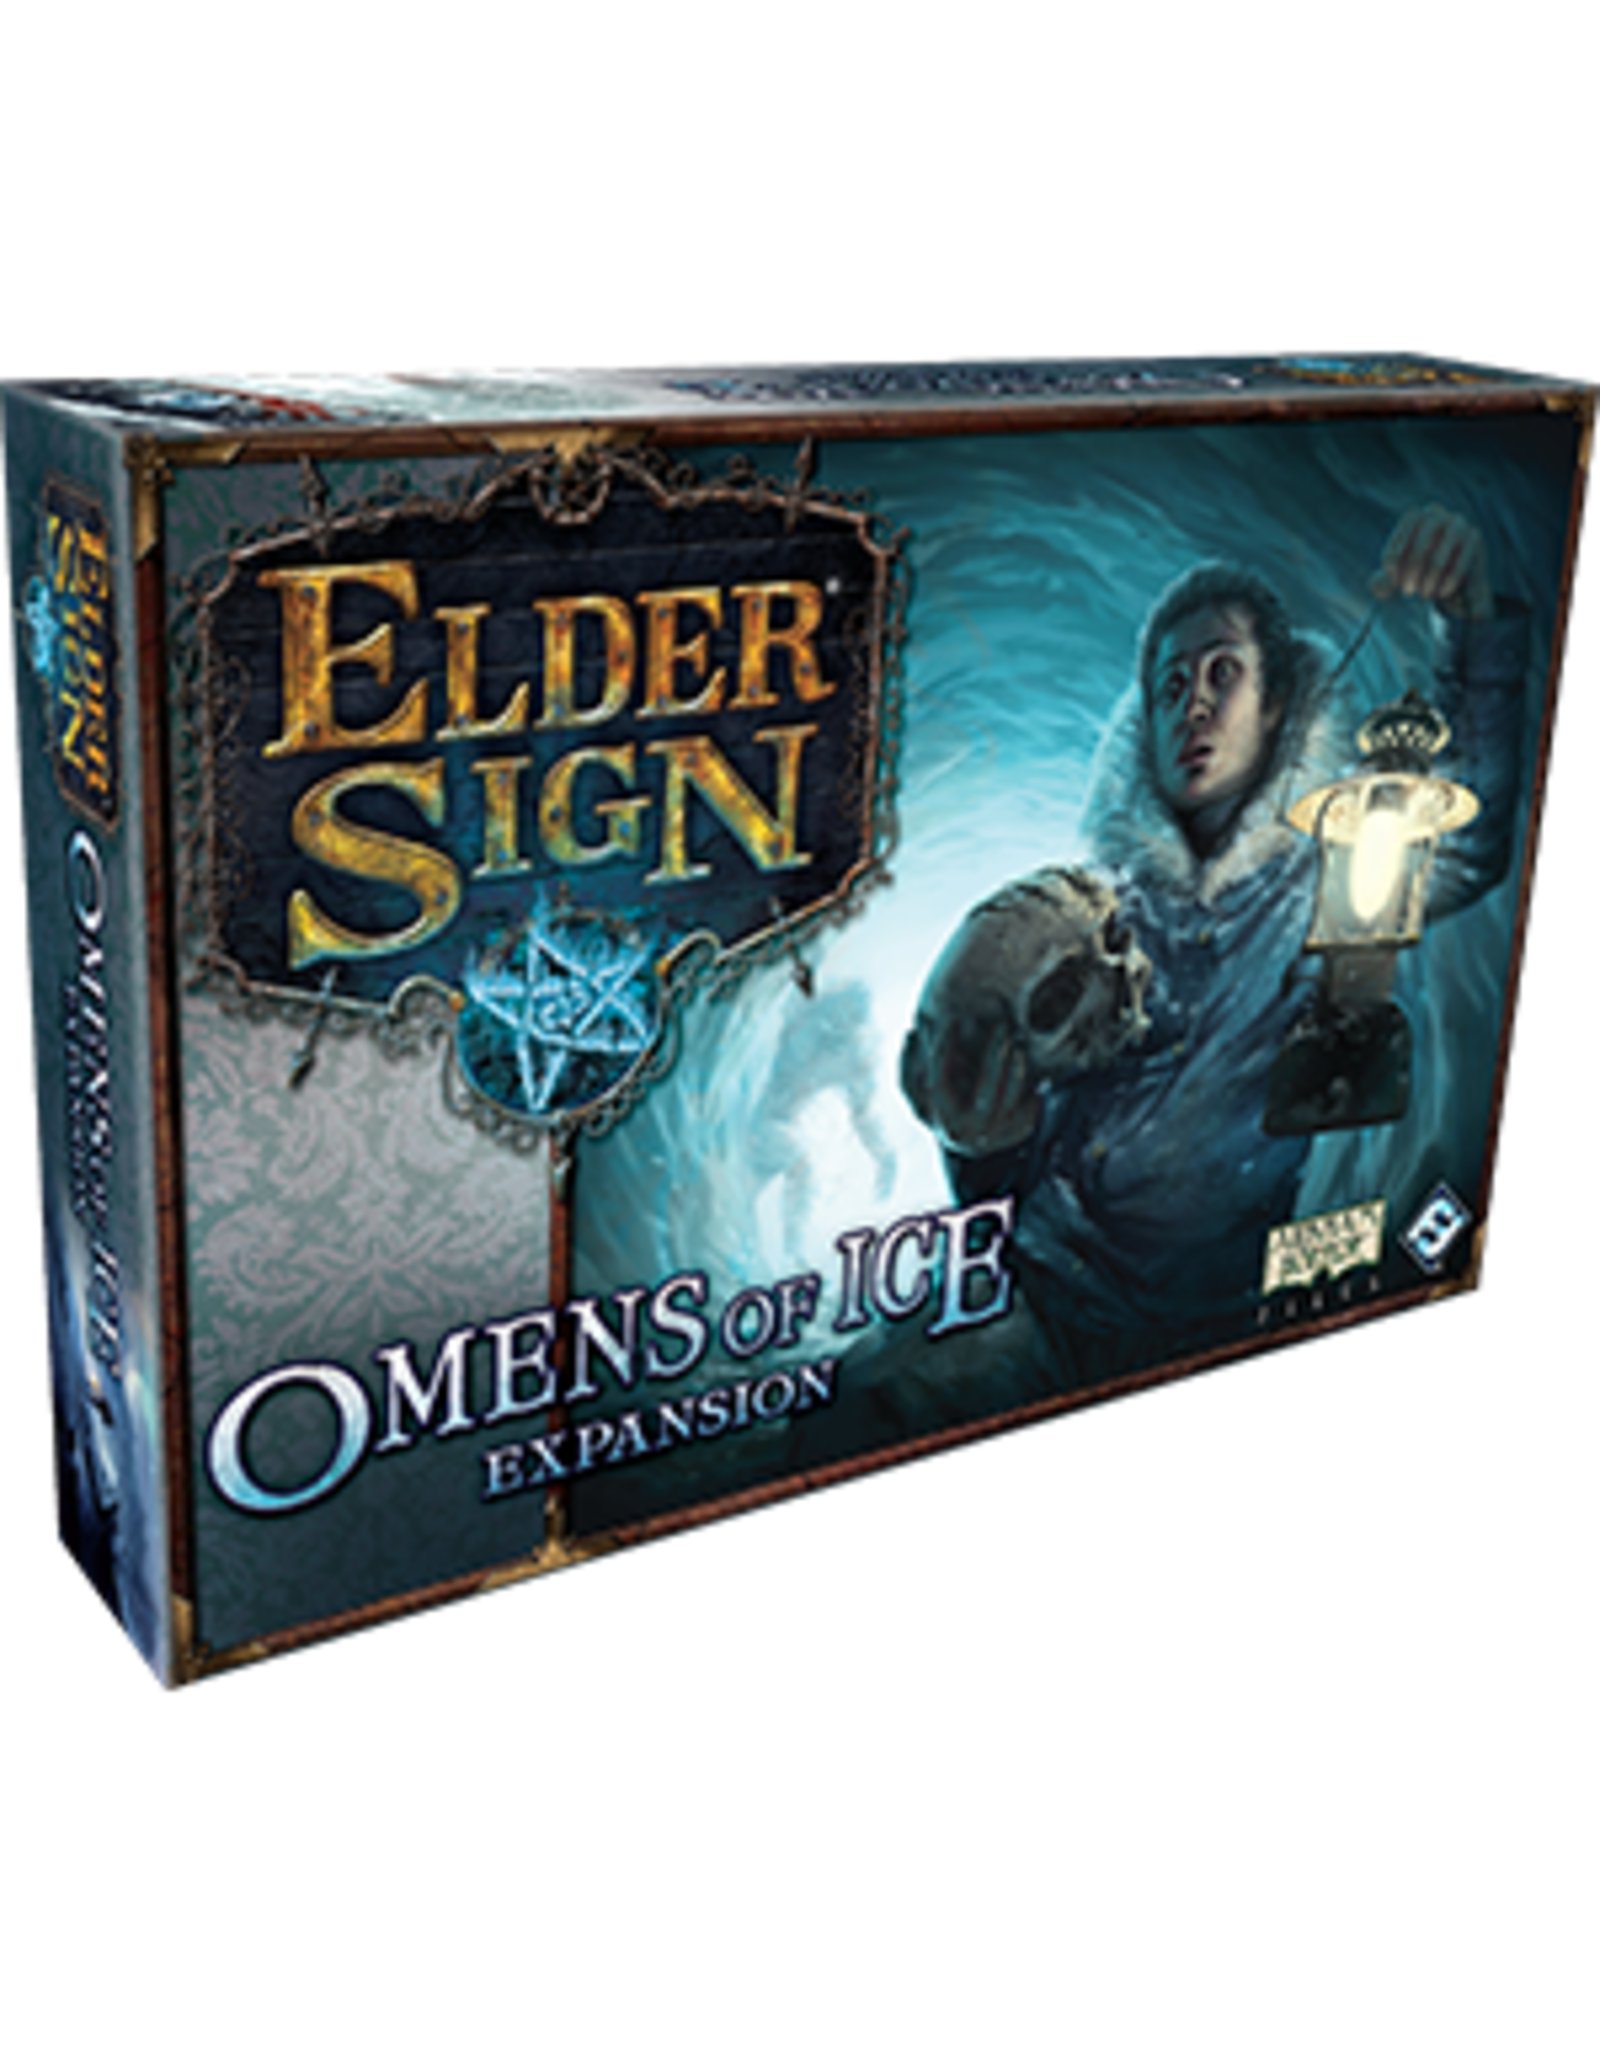 Elder Sign Omens of Ice